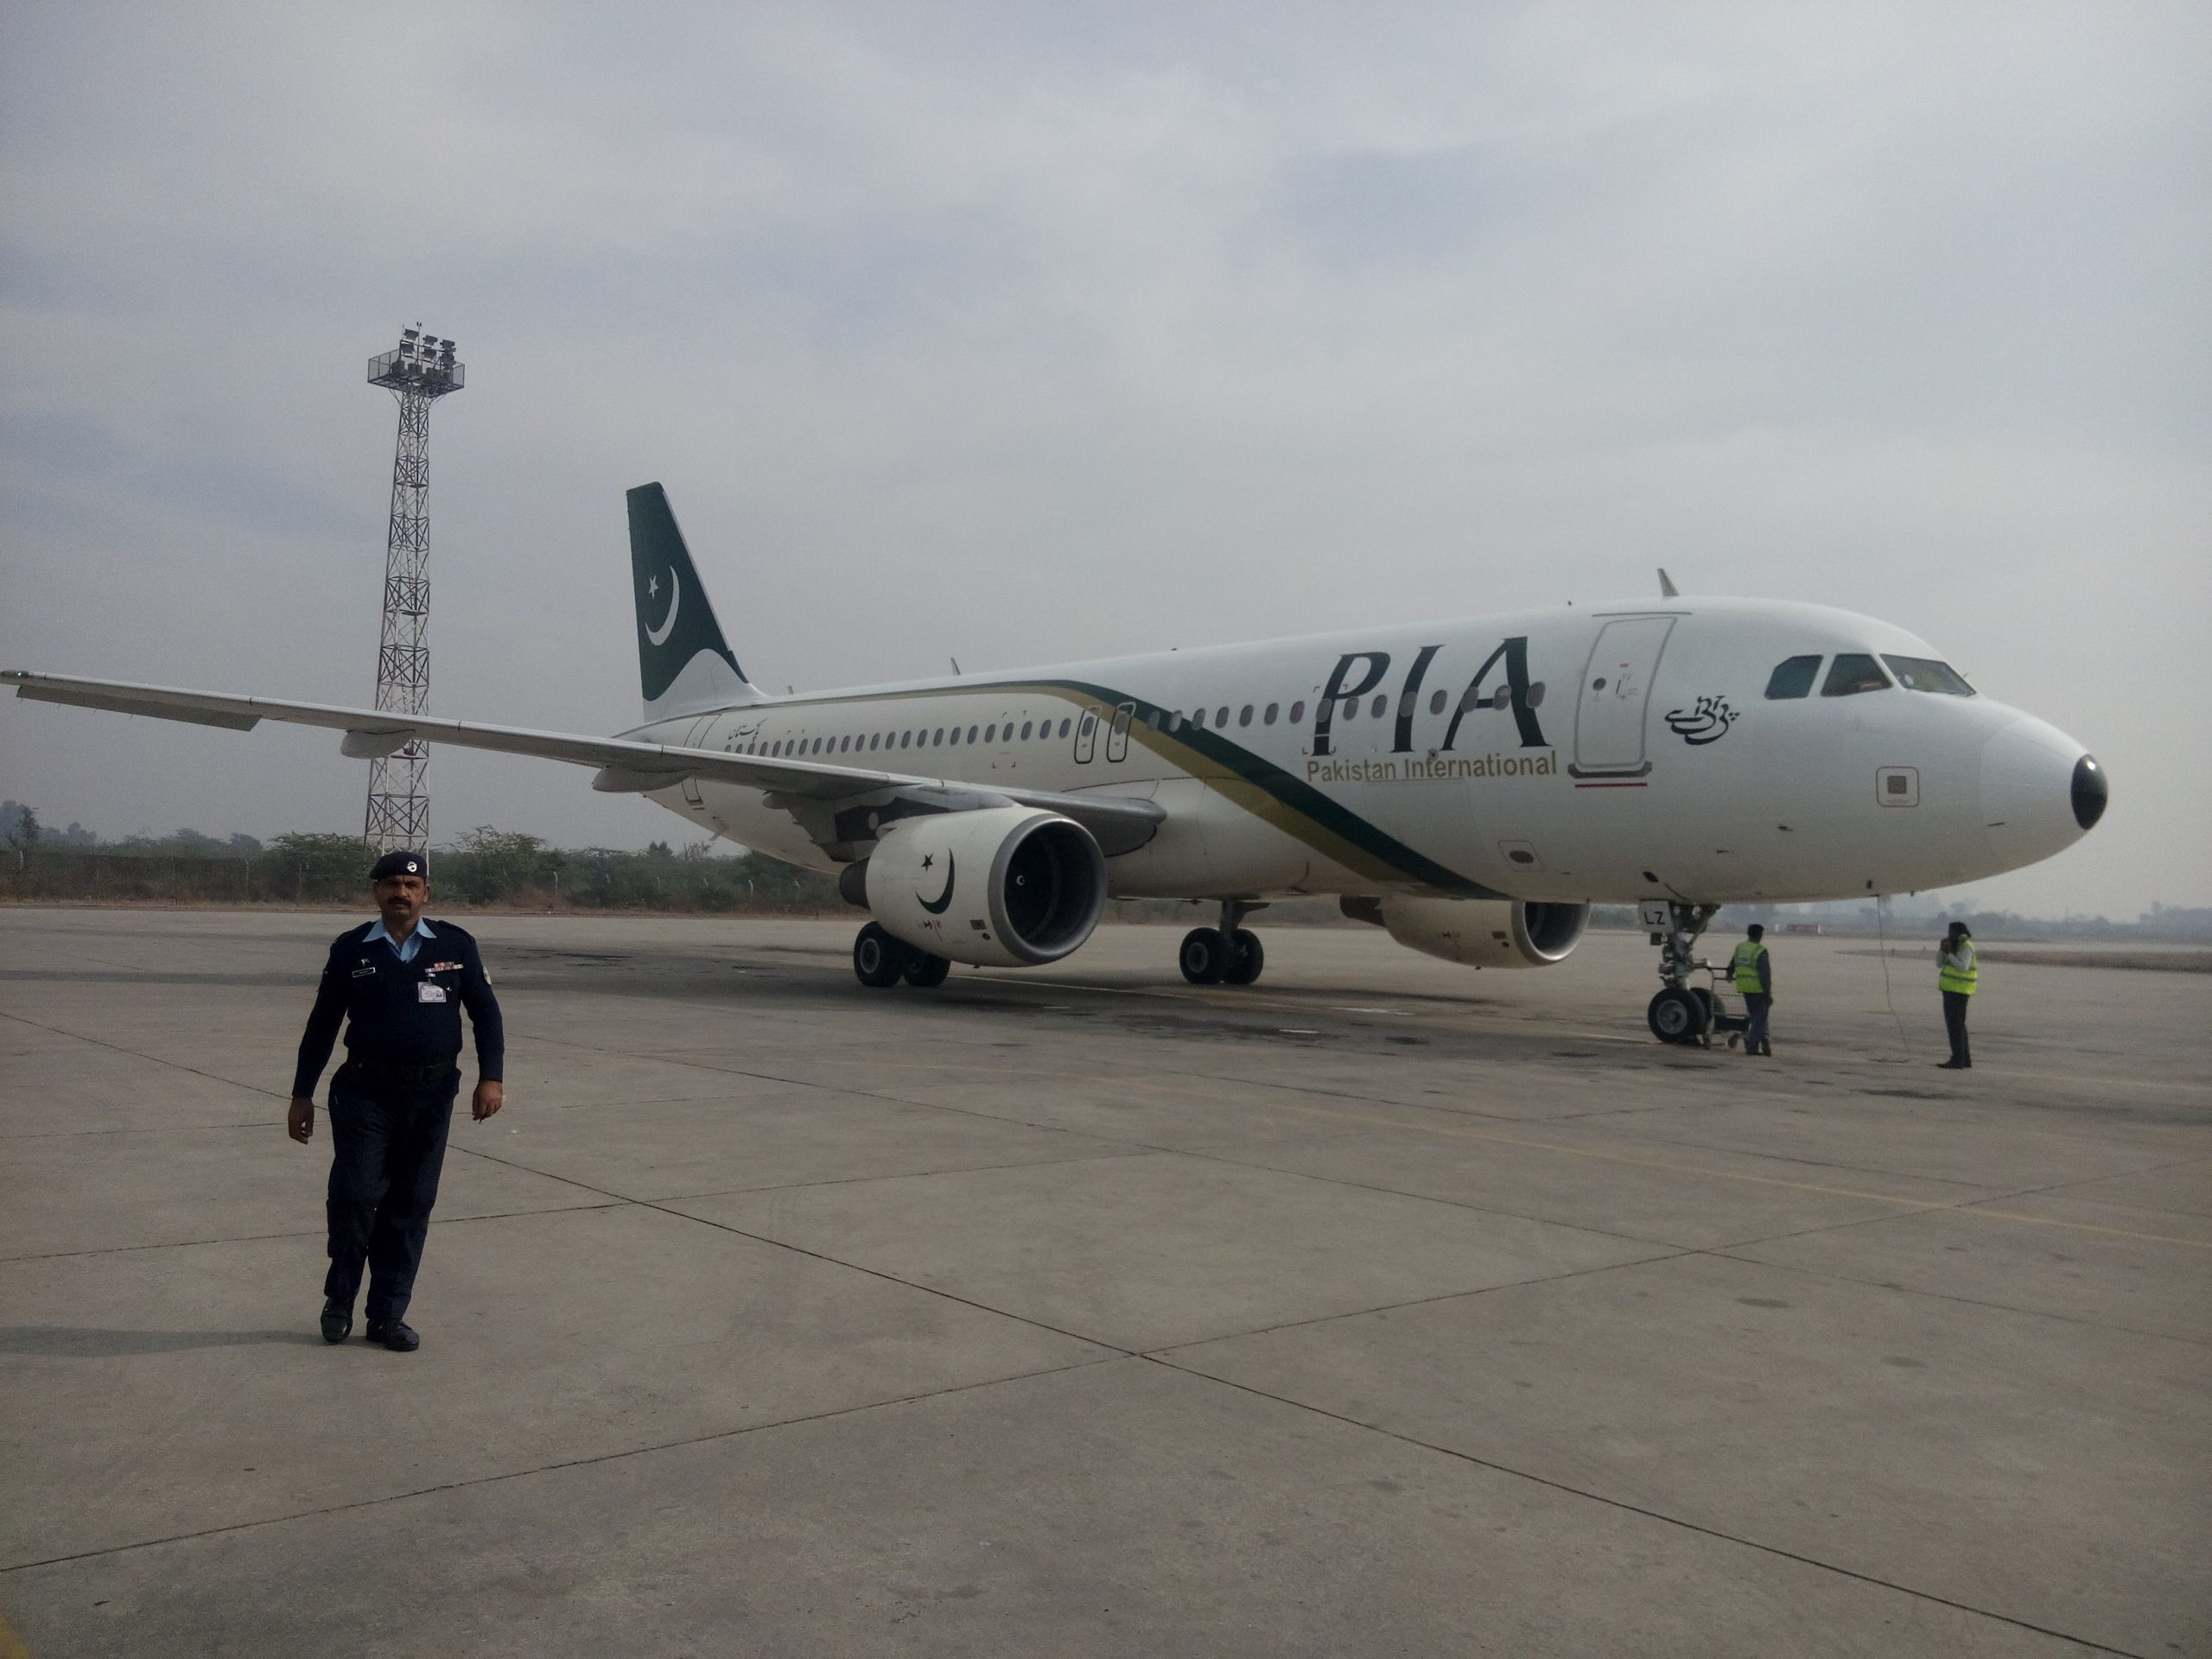 Le crash de Pakistan International Airlines en vidéos 2 Air Journal